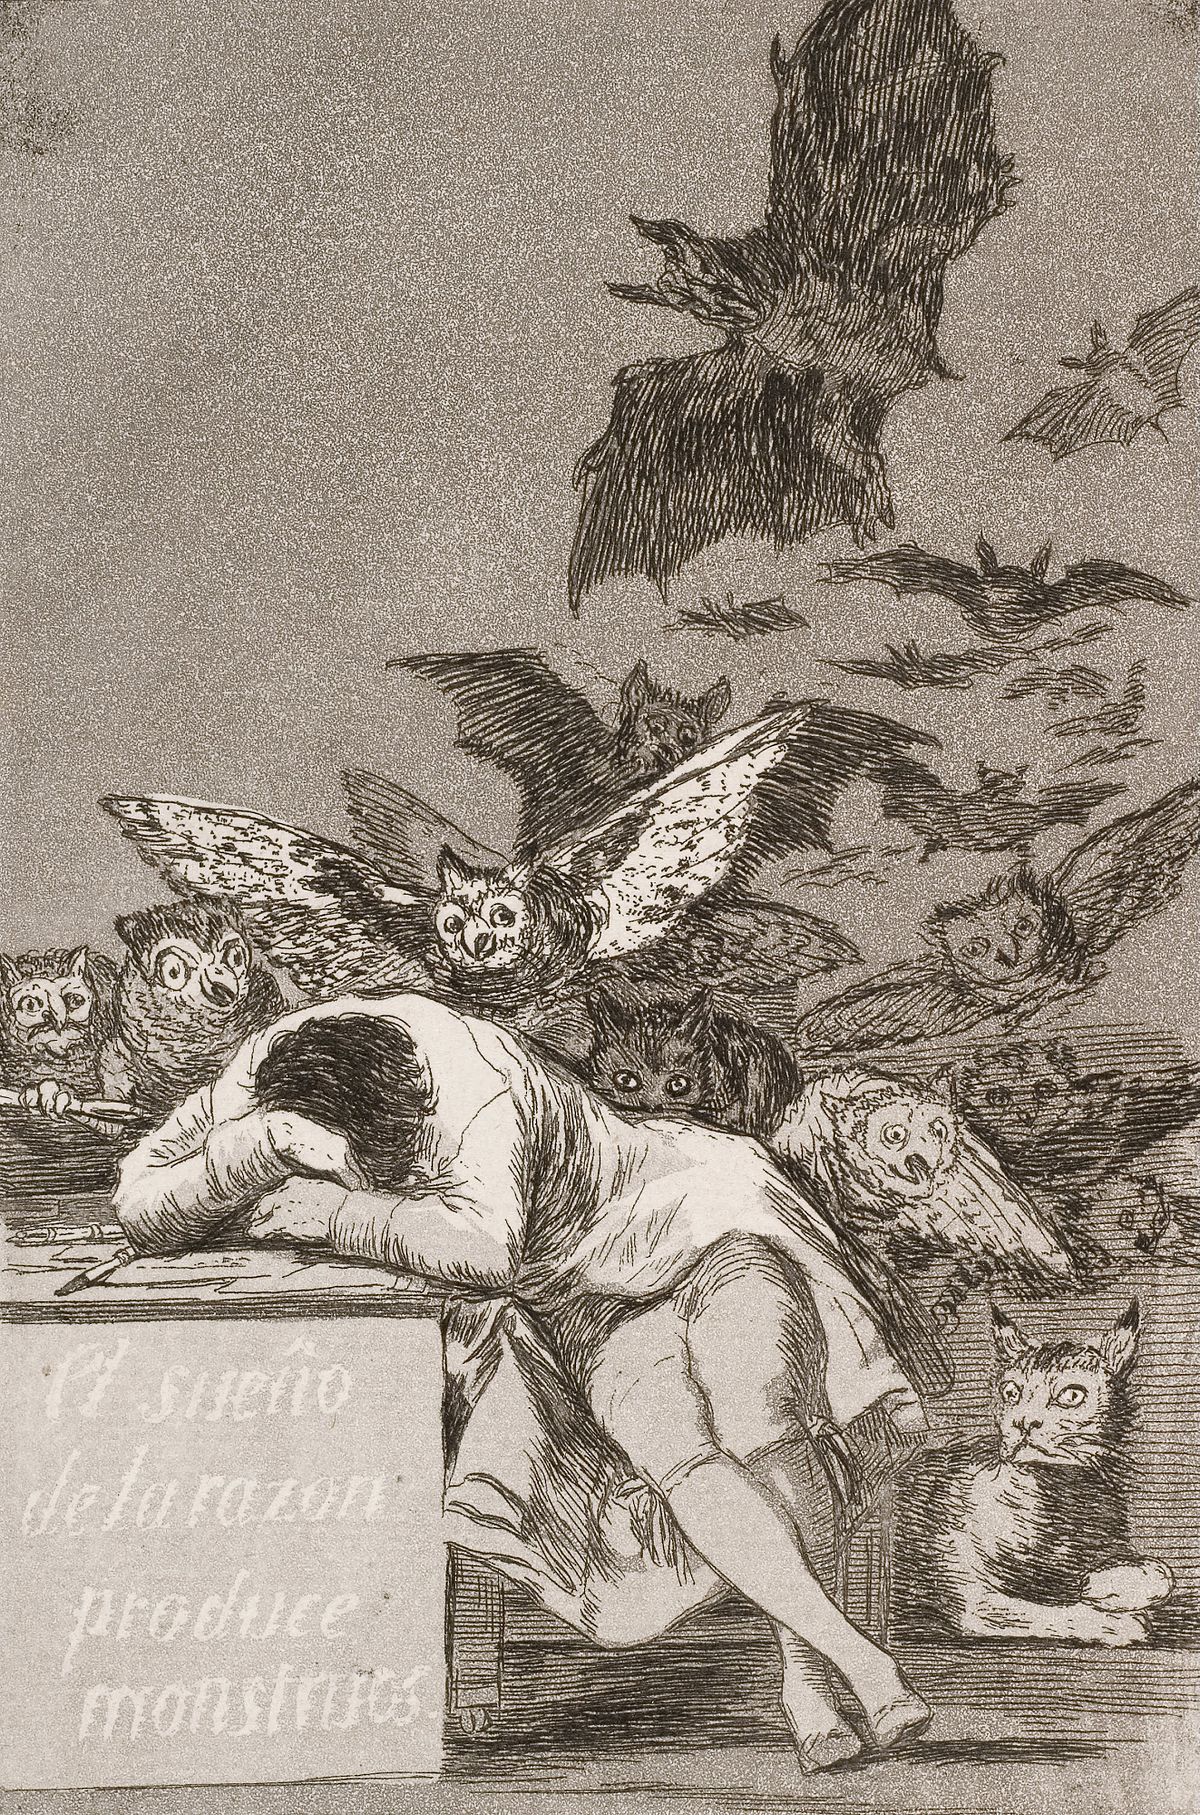 Der Schlaf der Vernunft gebiert Ungeheuer by Francisco Goya - 1799 - 21.6 x 15.2 cm Private Sammlung